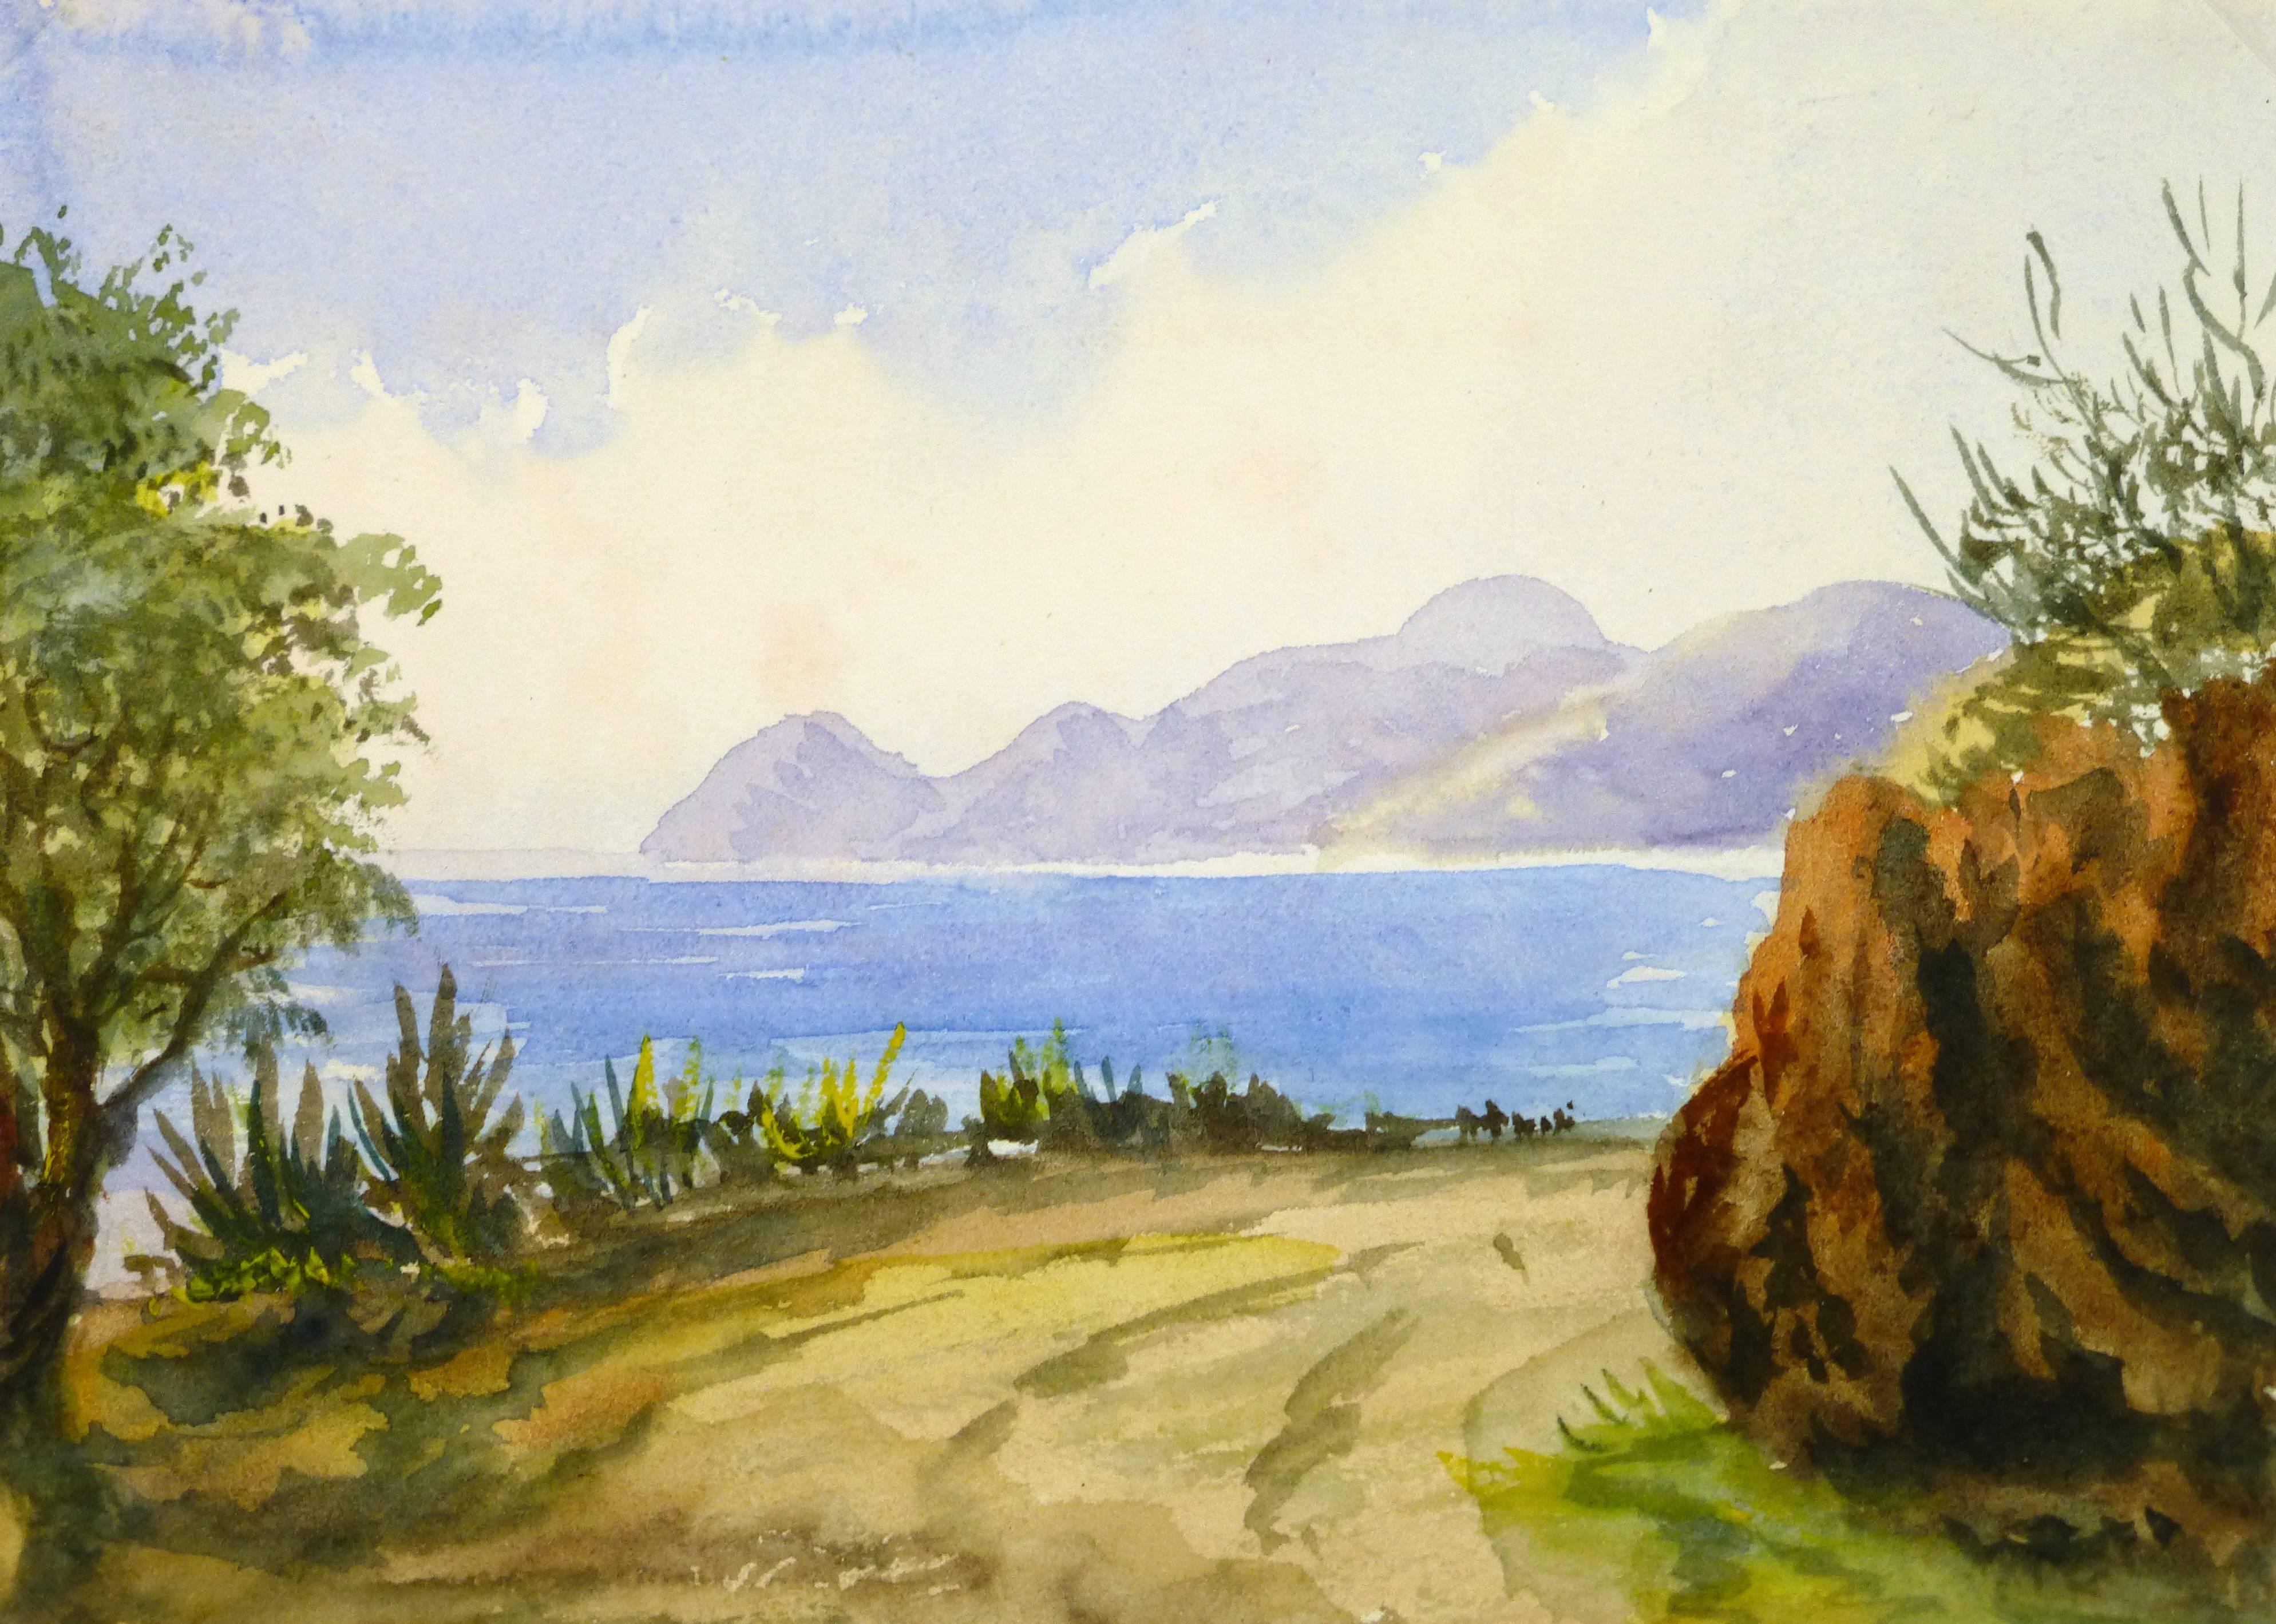 Unknown Landscape Art - Mediterranean View